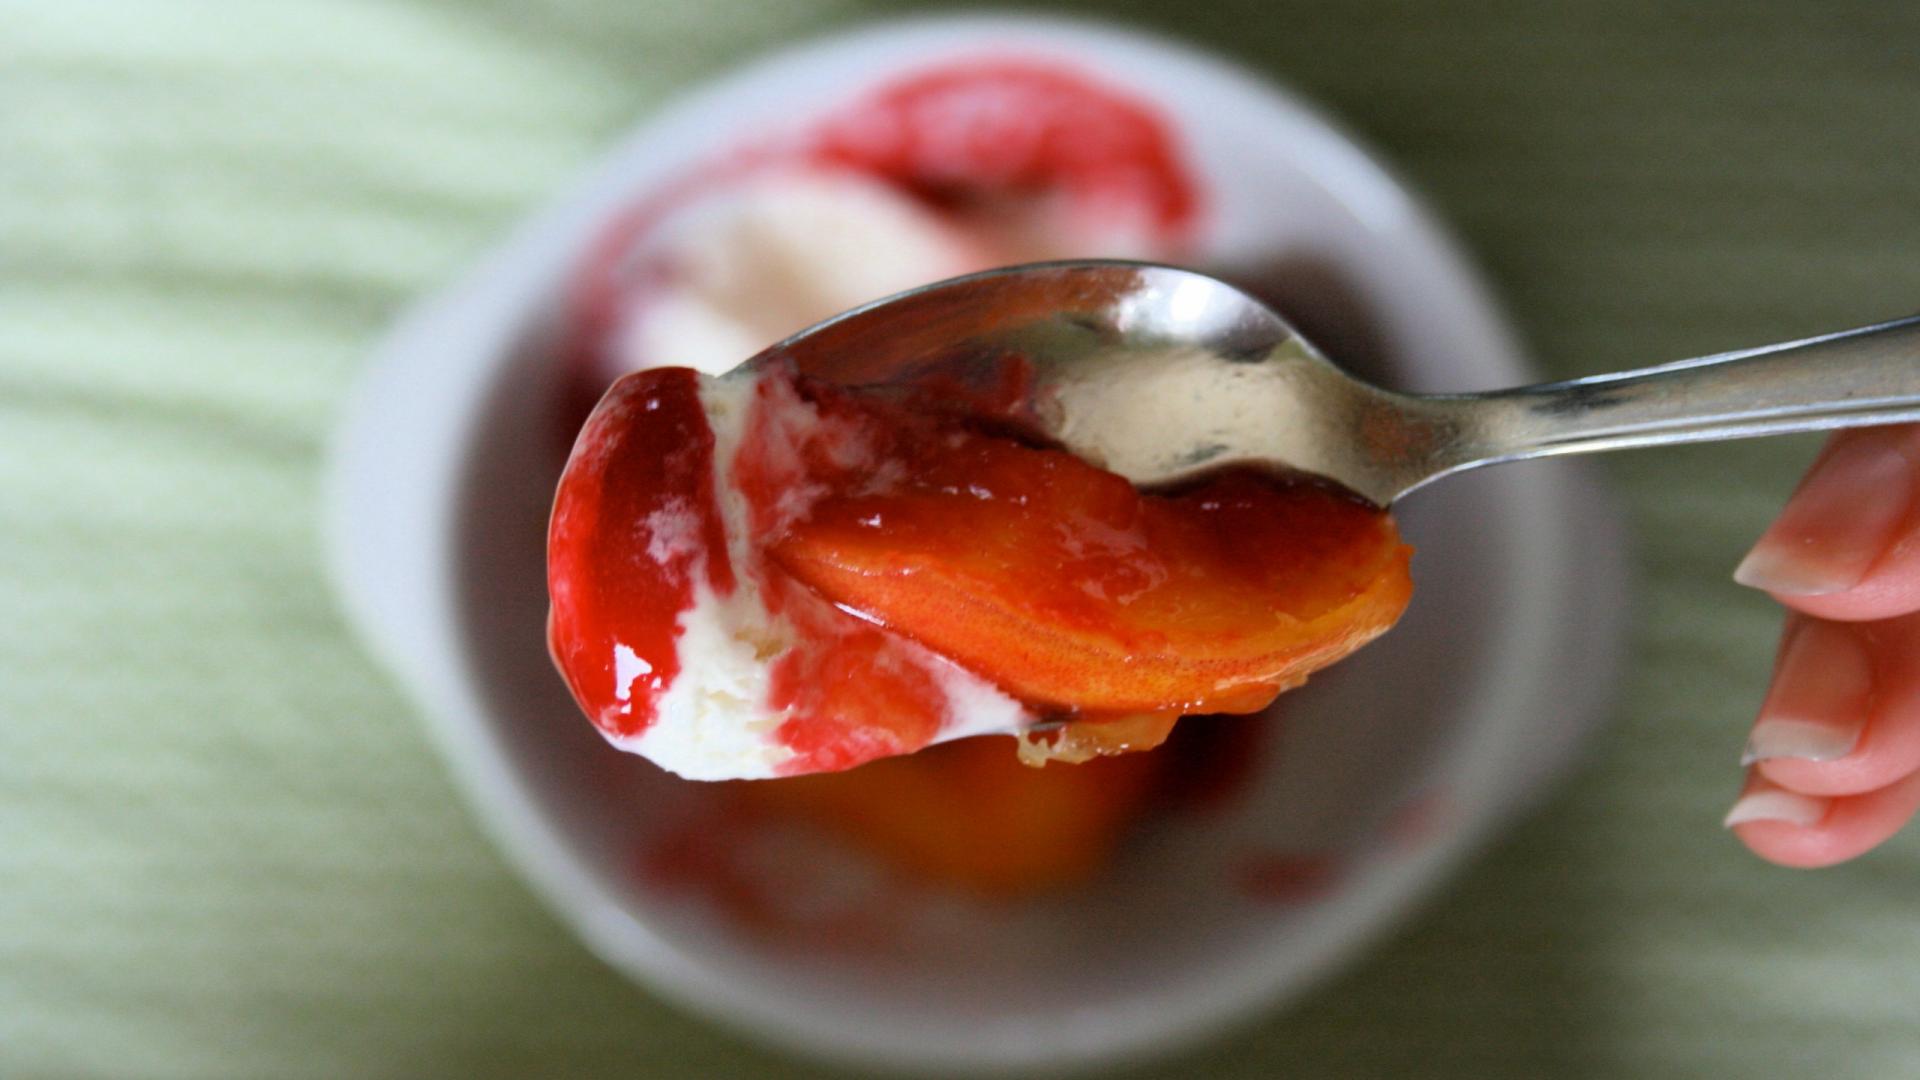 peach malba dessert food sweet hd wallpaper - (#28283) - HQ ...